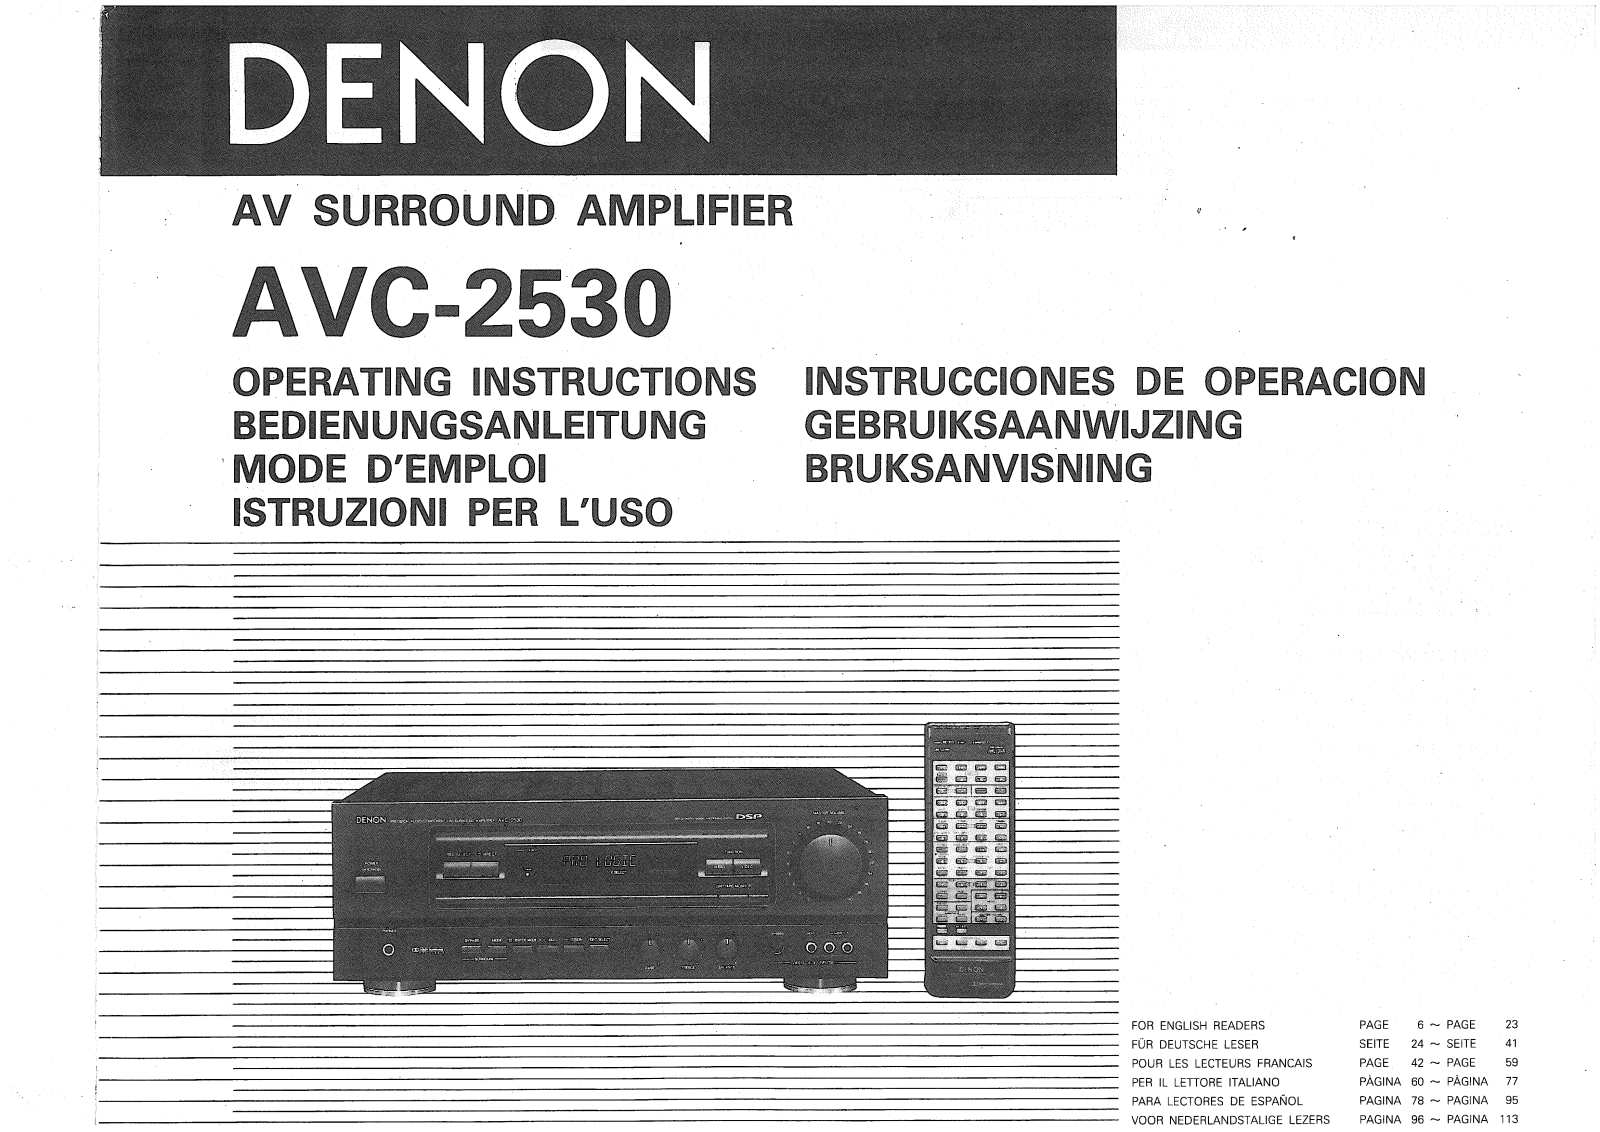 Denon AVC-2530 Owner's Manual